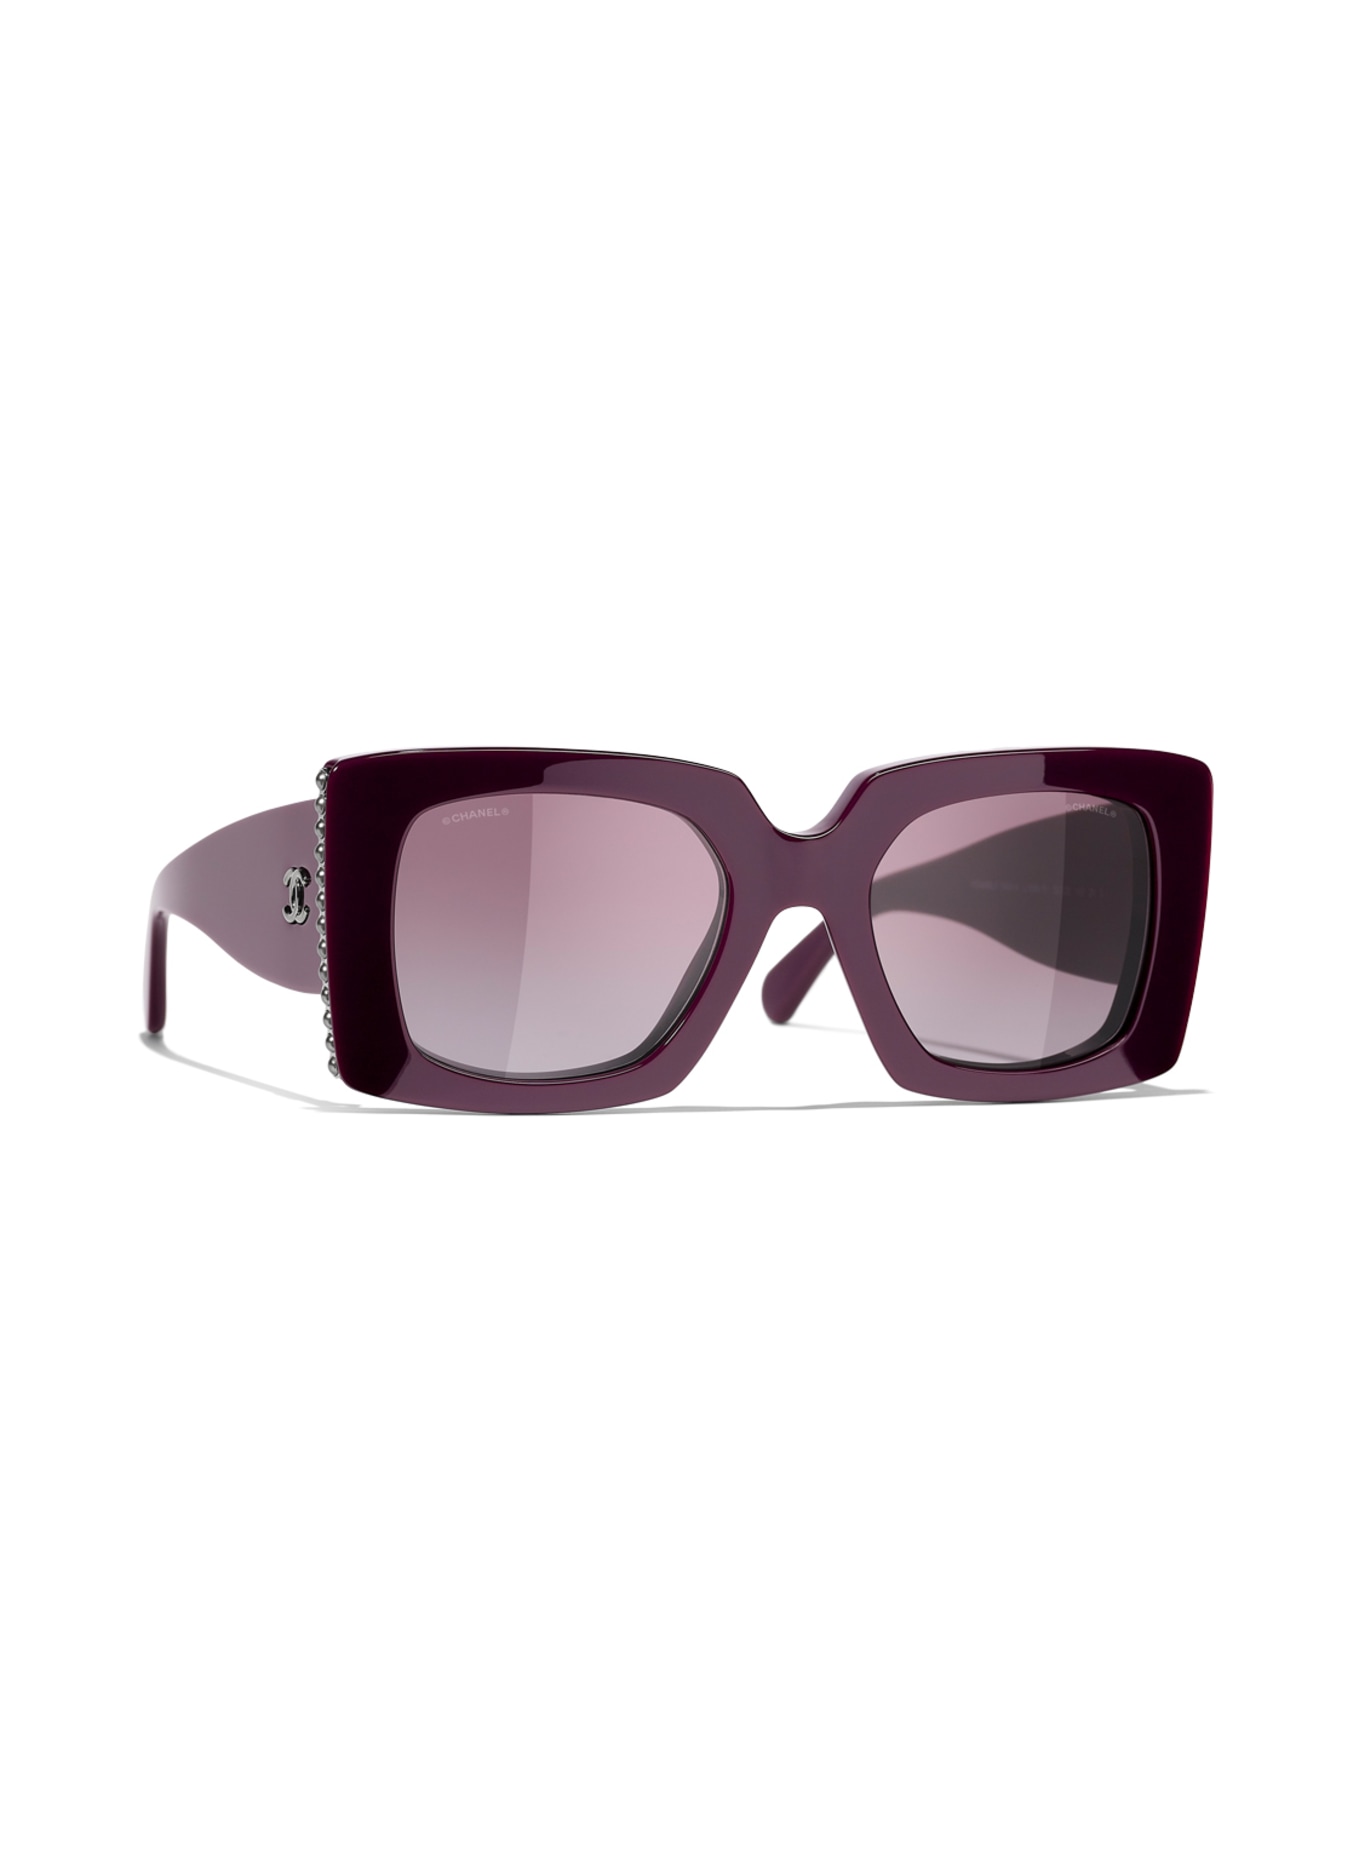 CHANEL Square sunglasses in 1068s1 - dark purple/ purple